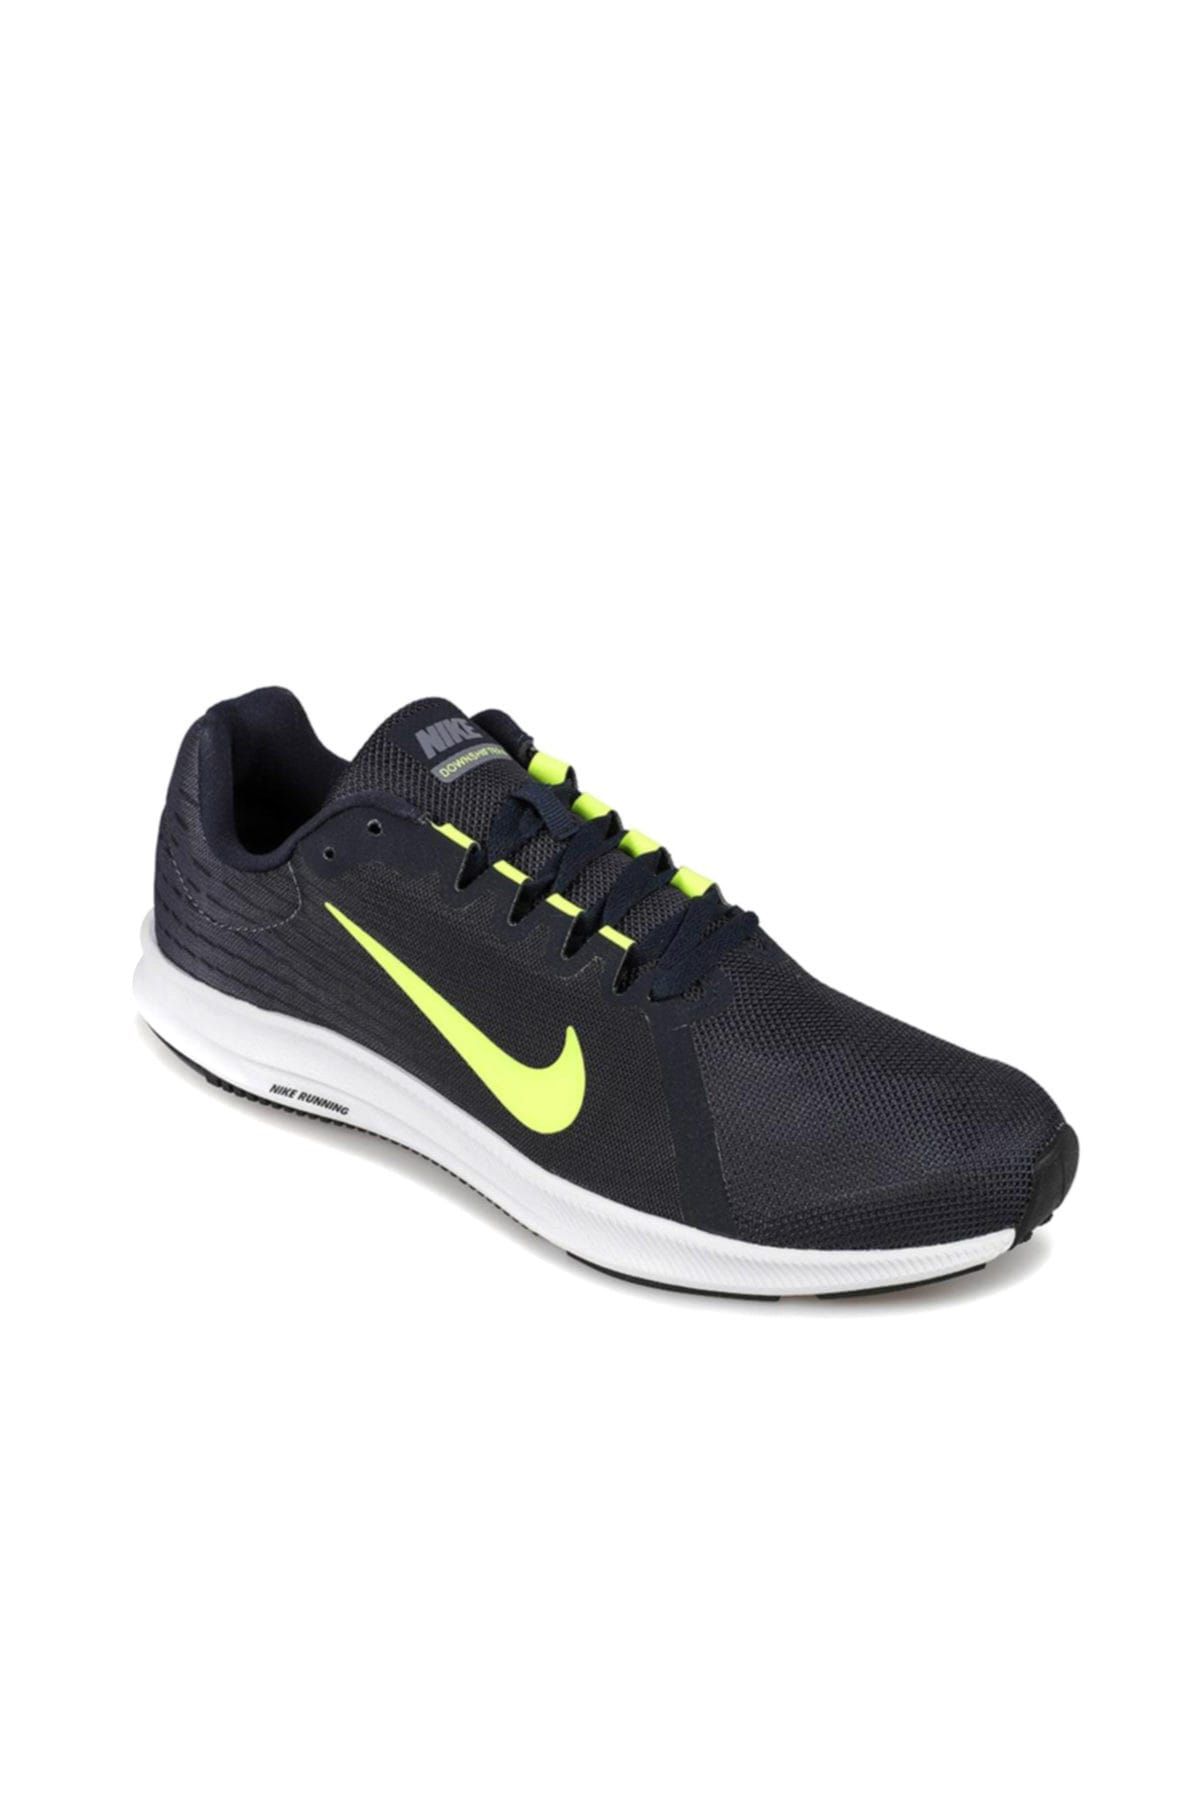 Nike Erkek Koşu & Antrenman Ayakkabısı -  Downshifter 8 Koşu Ayakkabısı